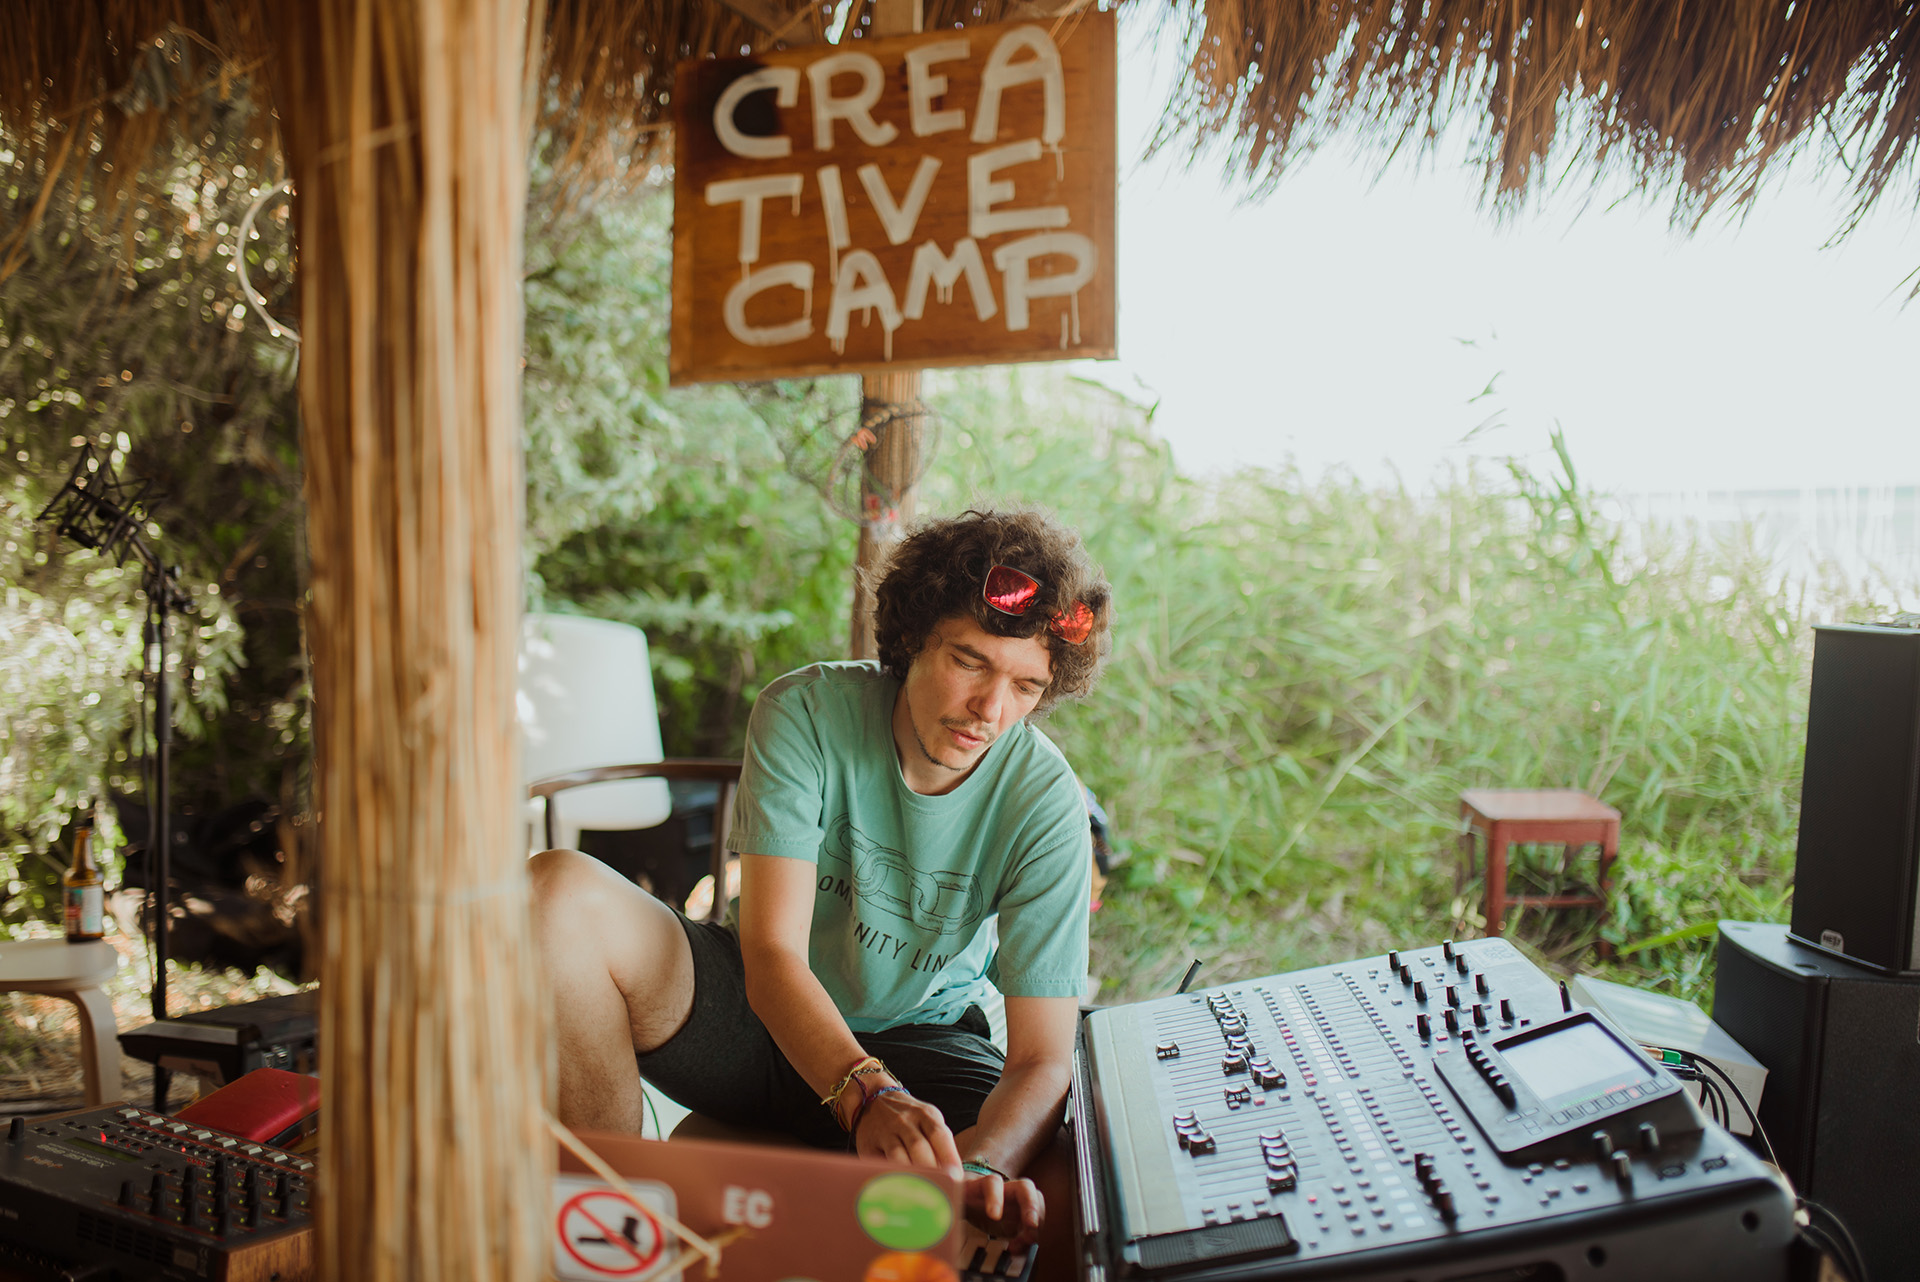 Electric Creative Camp – cum s-a văzut de către cei care au fost acolo